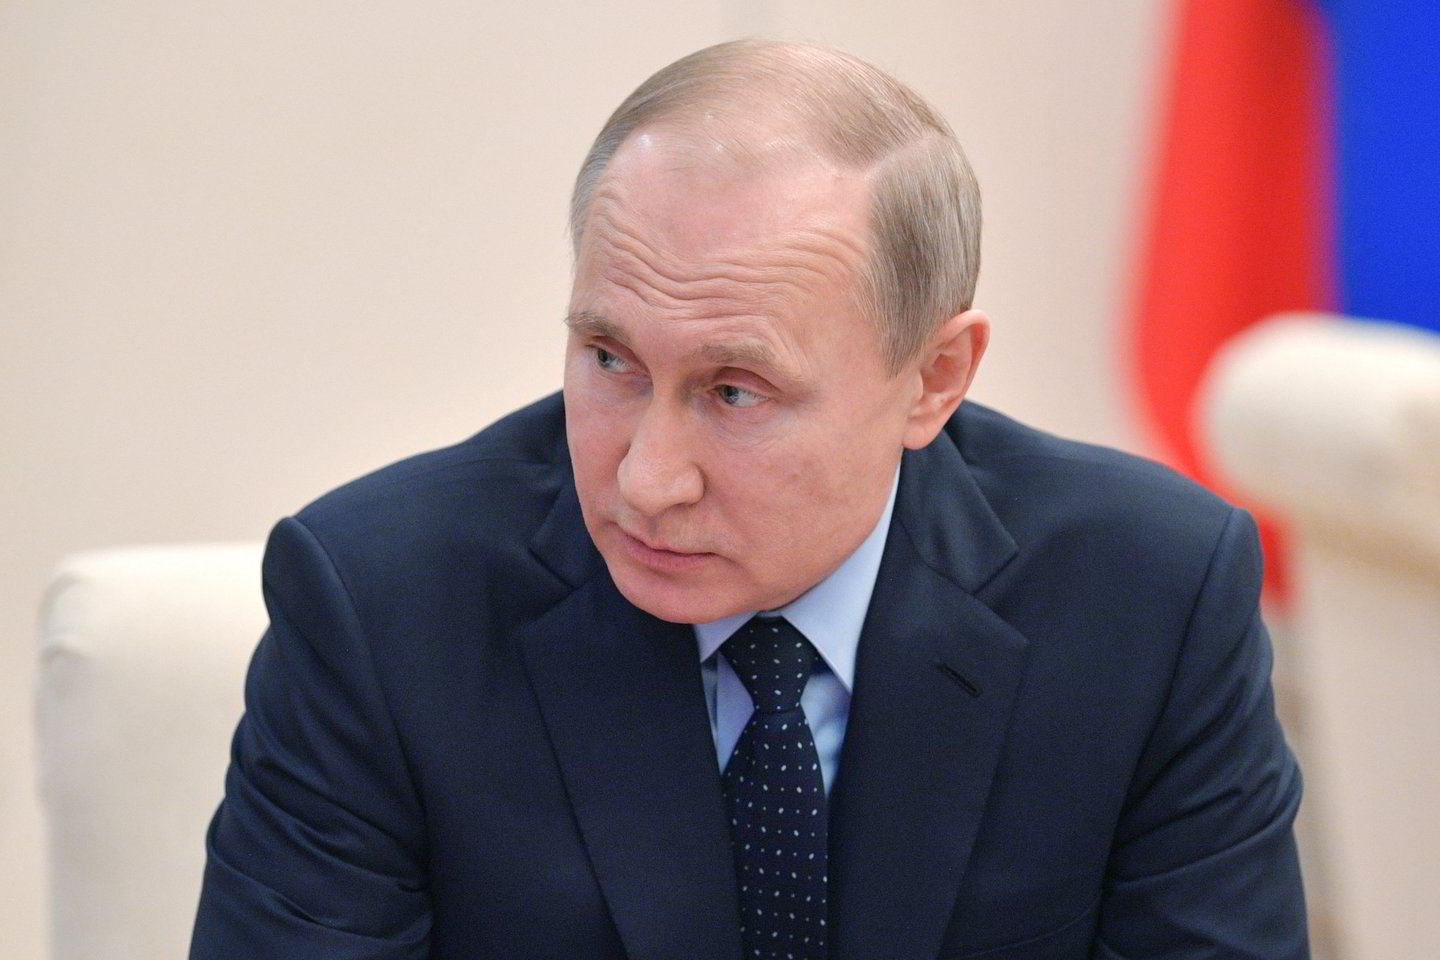  V.Putinas tariamai suerzino D.Trumpą, kai užsiminė apie naujus Rusijos branduolinius ginklus.<br> Sputnik/Scanpix nuotr.